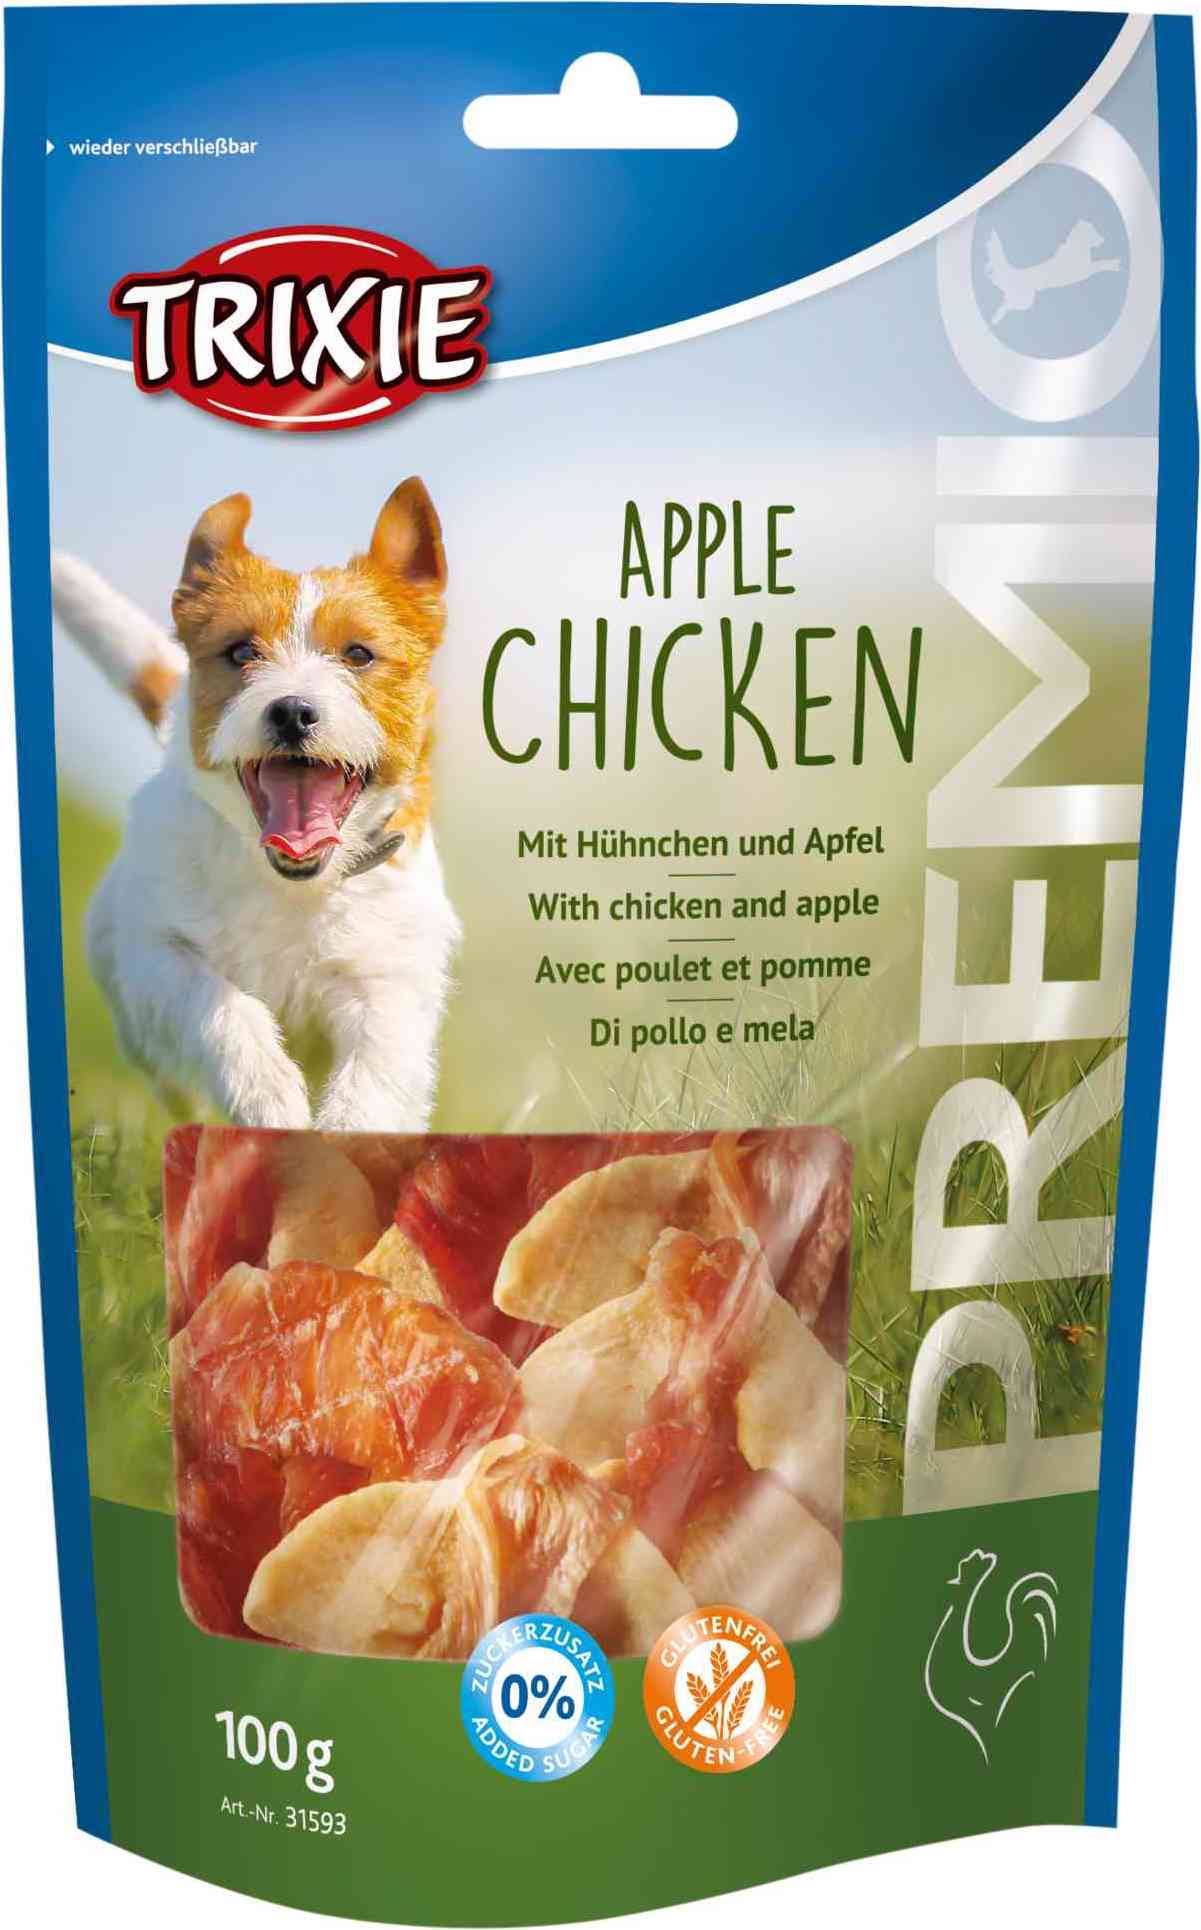 Trixie Premio Dog Treat - Apple Chicken, 100g